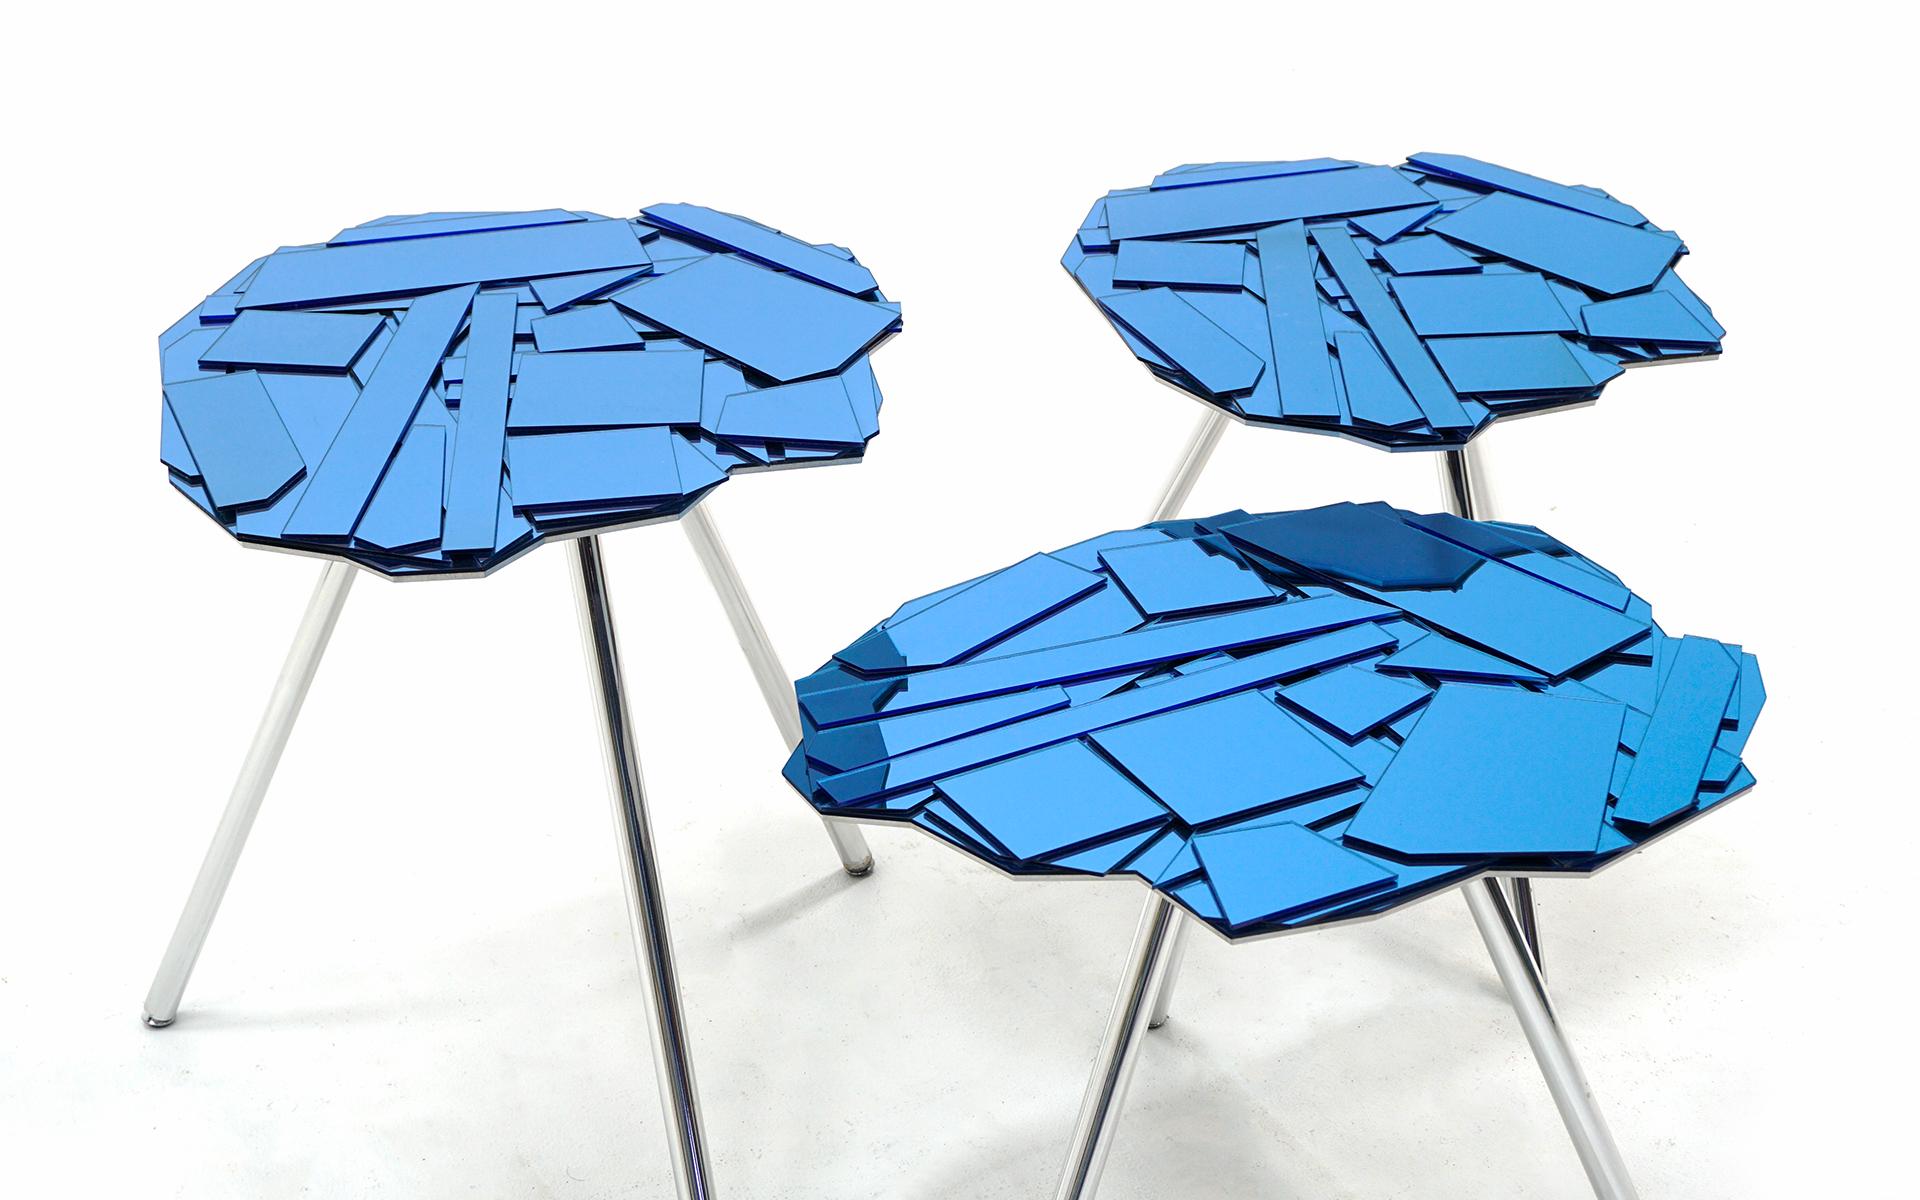 Satz von drei Brasilia-Tischen, entworfen von Fernando und Humberto Campana für Edra, Italien, 2006. Blau verspiegelte Reflexglasplatten und verchromte Aluminiumbeine. Die Glasscherben sind auf einer lasergeschnittenen Aluminiumplatte befestigt.